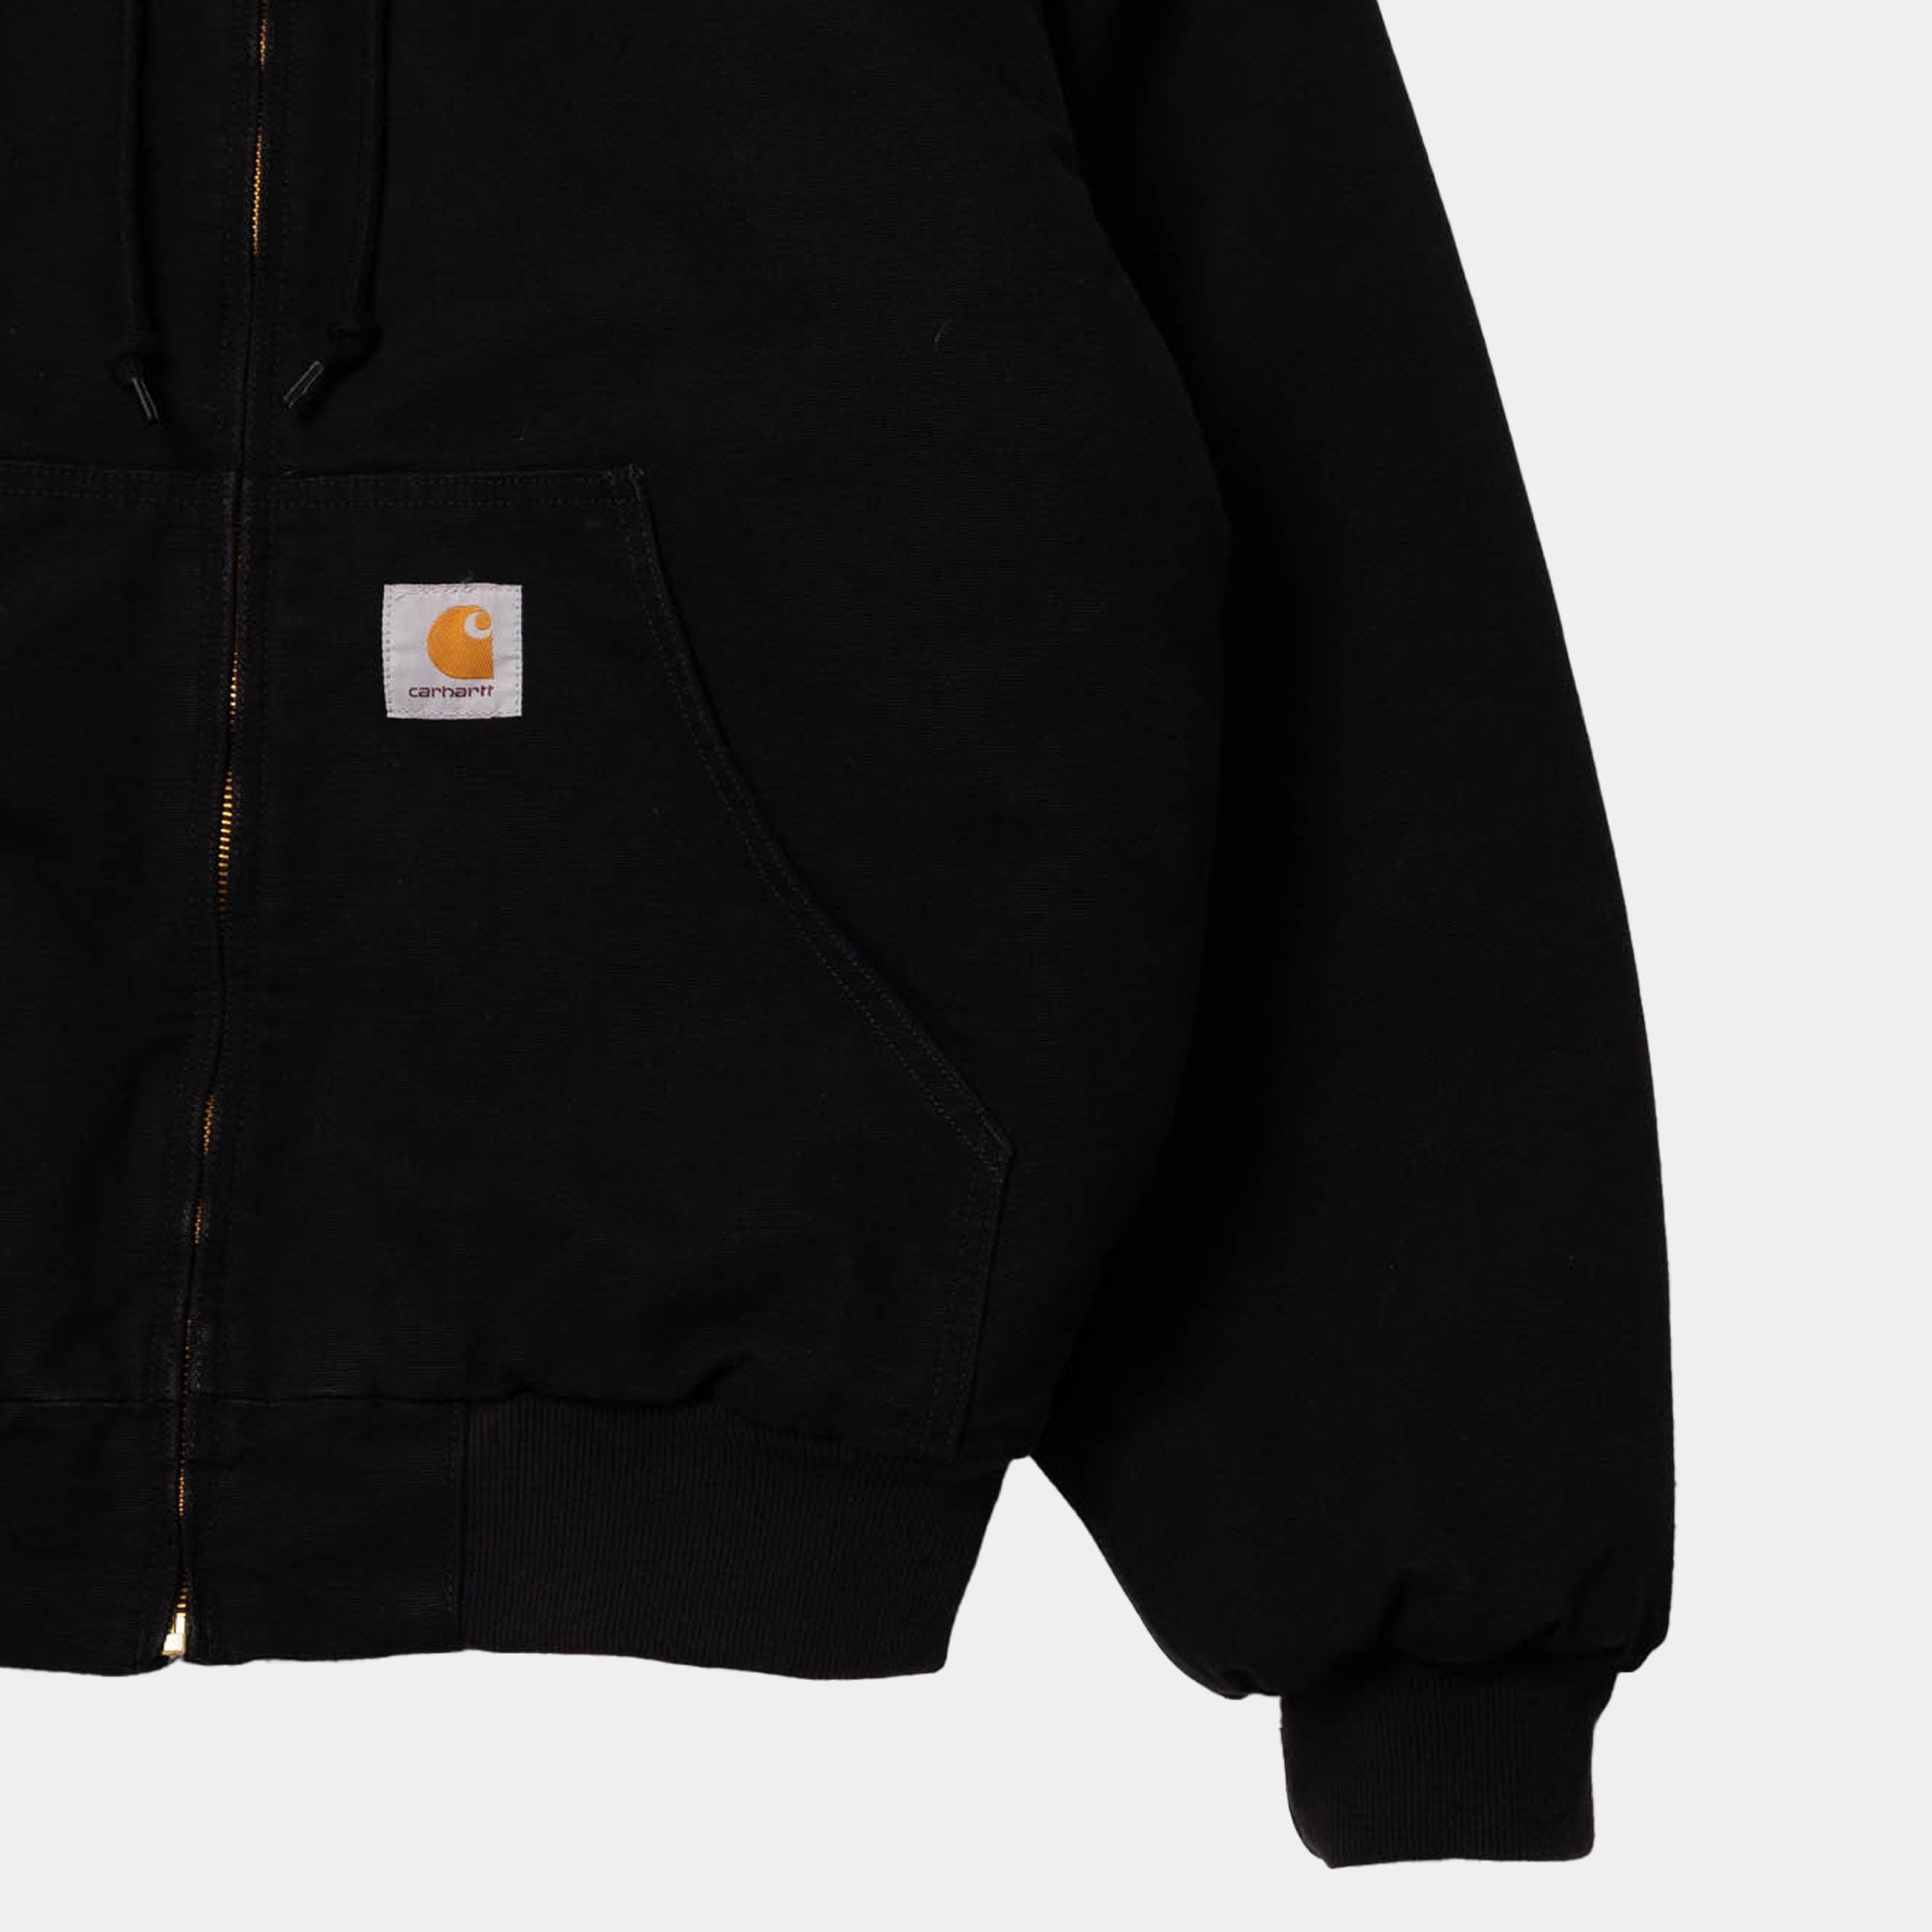 Carhartt WIP OG Active Jacket (black)